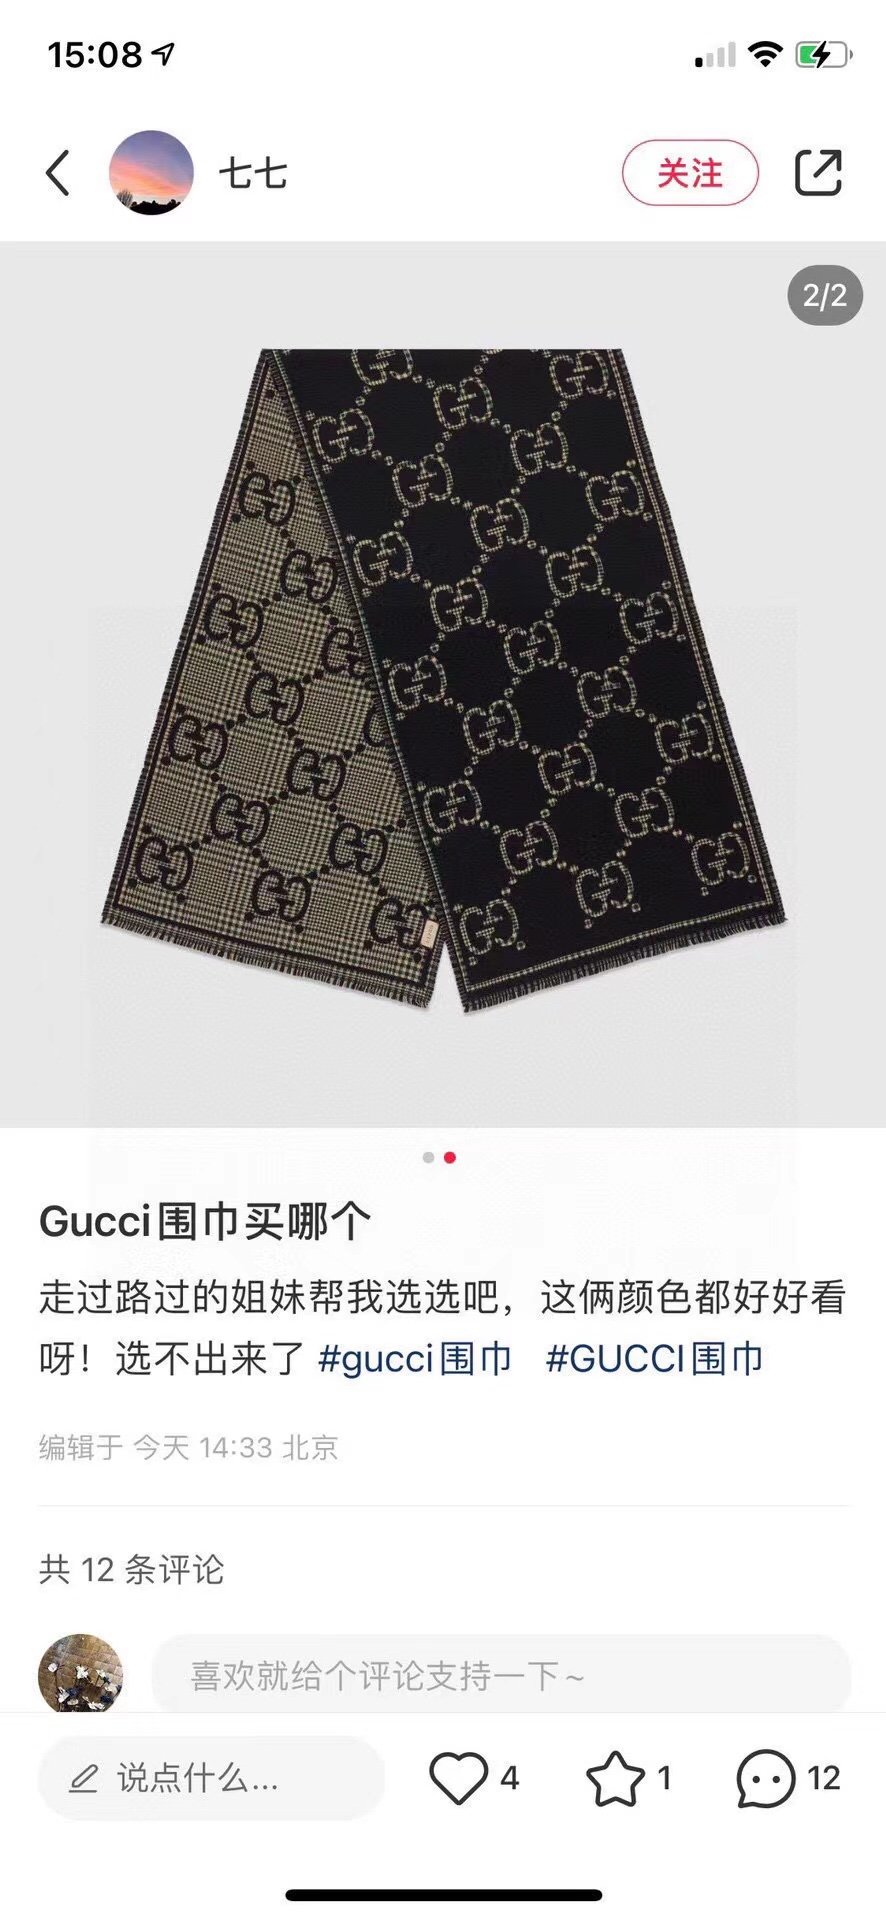 品名Gucci风格字母面料羊毛尺寸4